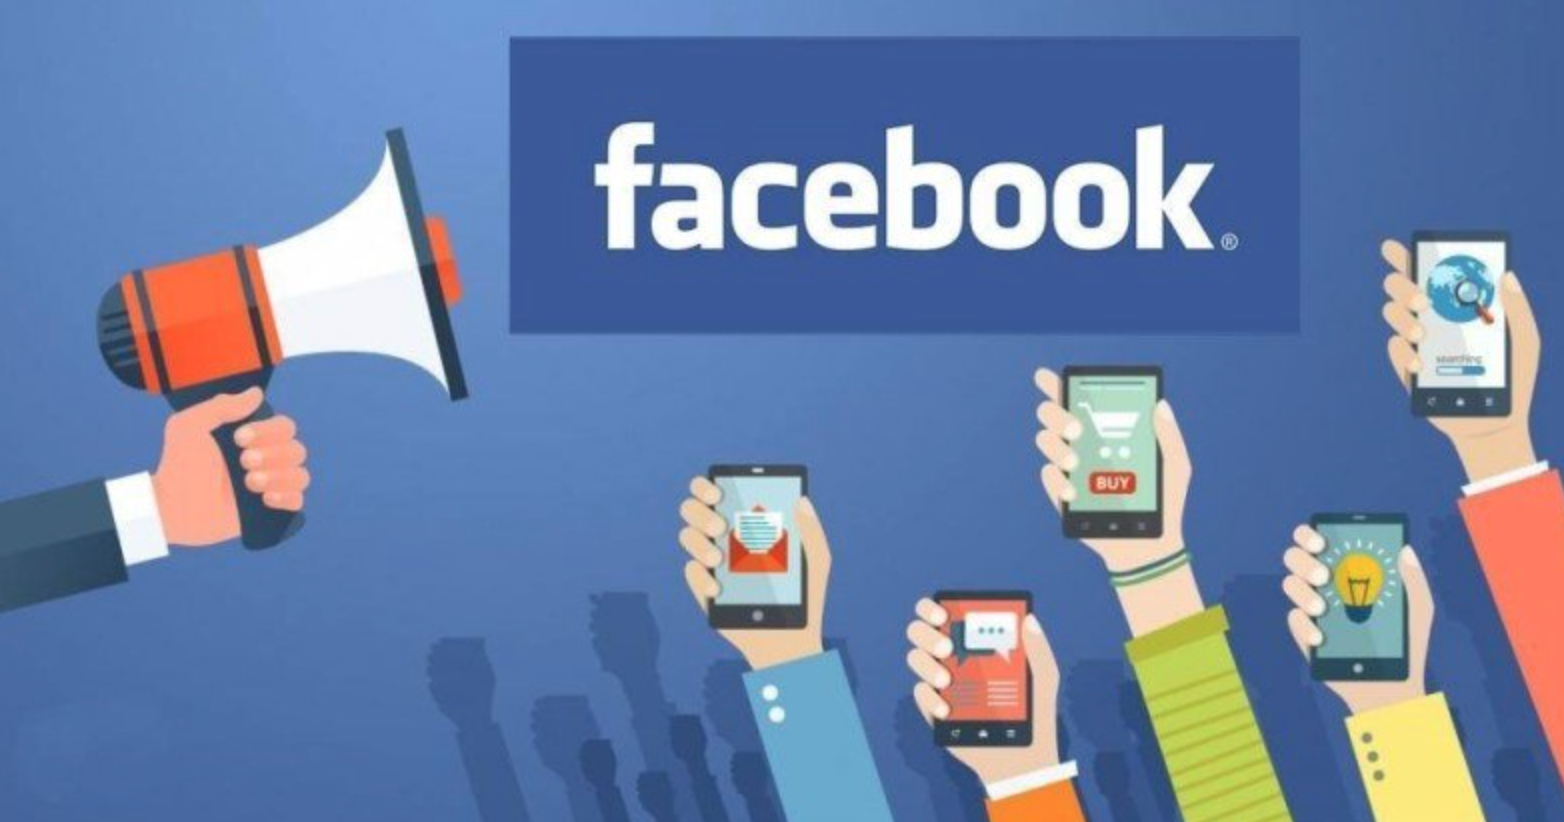 Chia sẻ cách thức kinh doanh hiệu quả trên Facebook